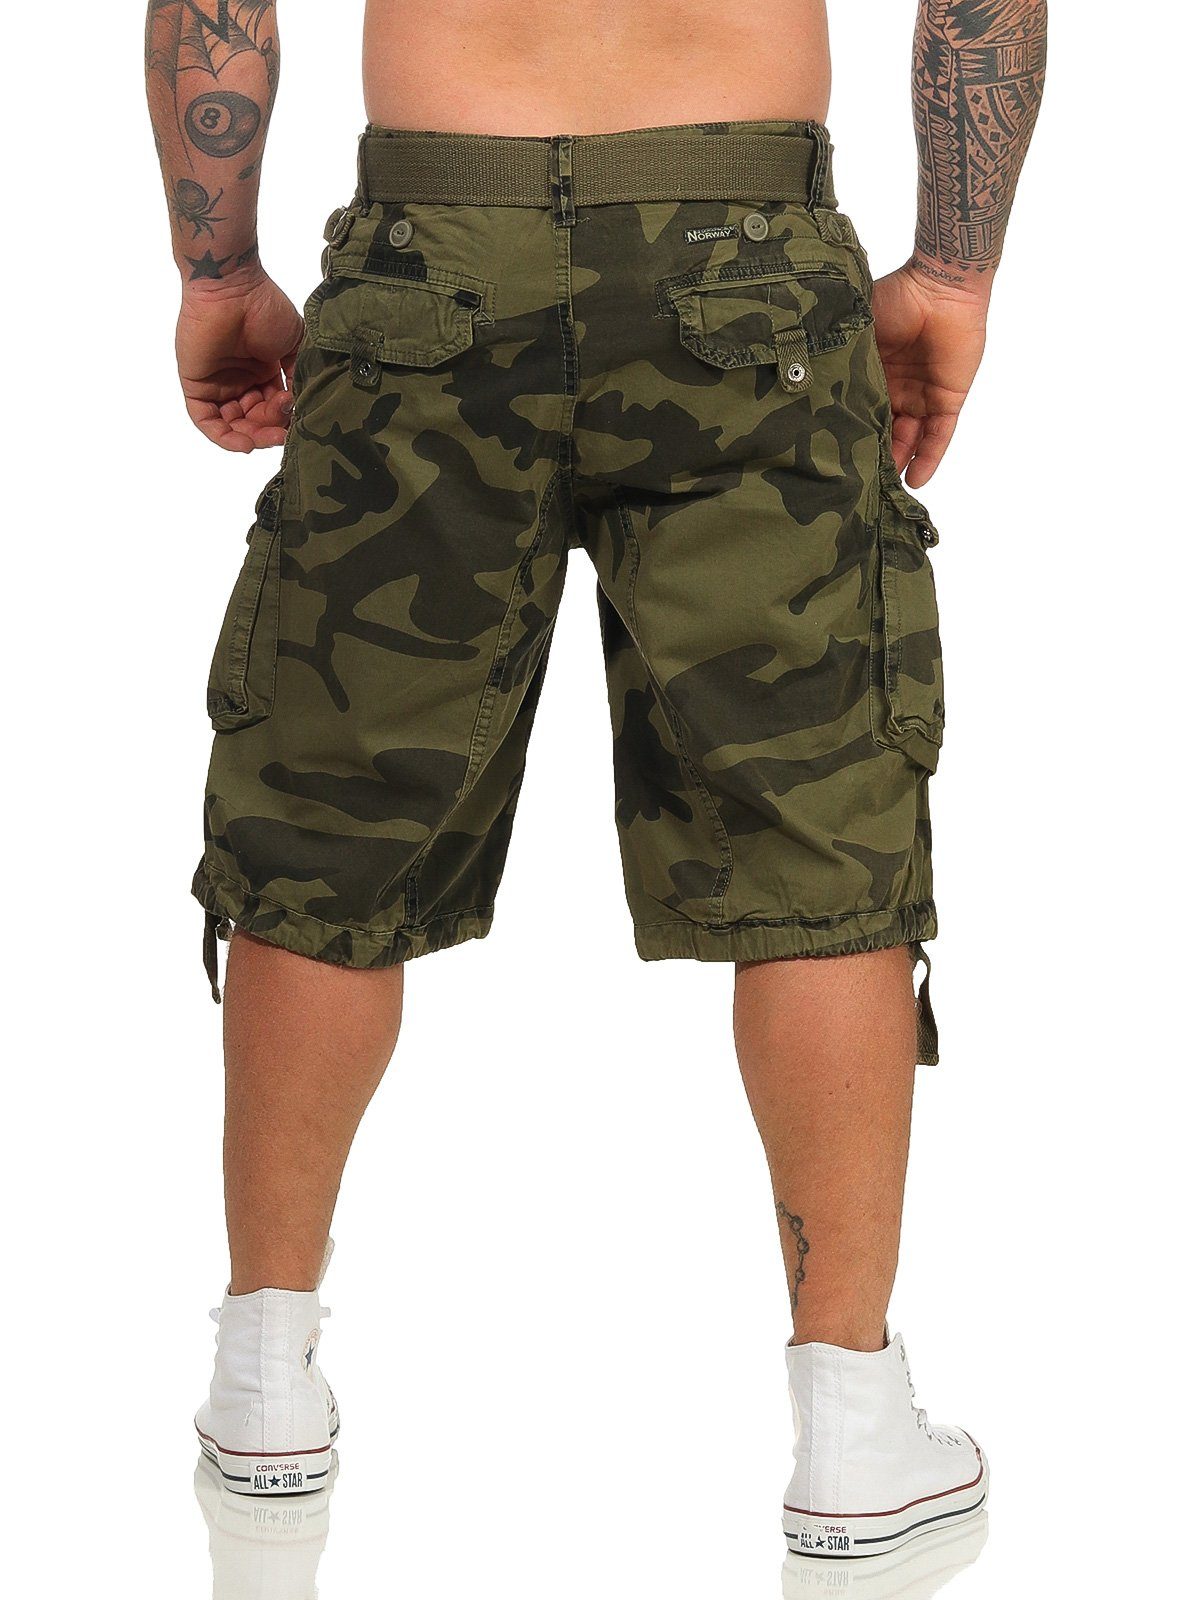 Hose, abnehmbarem Geographical Shorts, Norway kurze Gürtel) Herren / Cargoshorts (mit camouflage PANORAMIQUE unifarben kaki Shorts